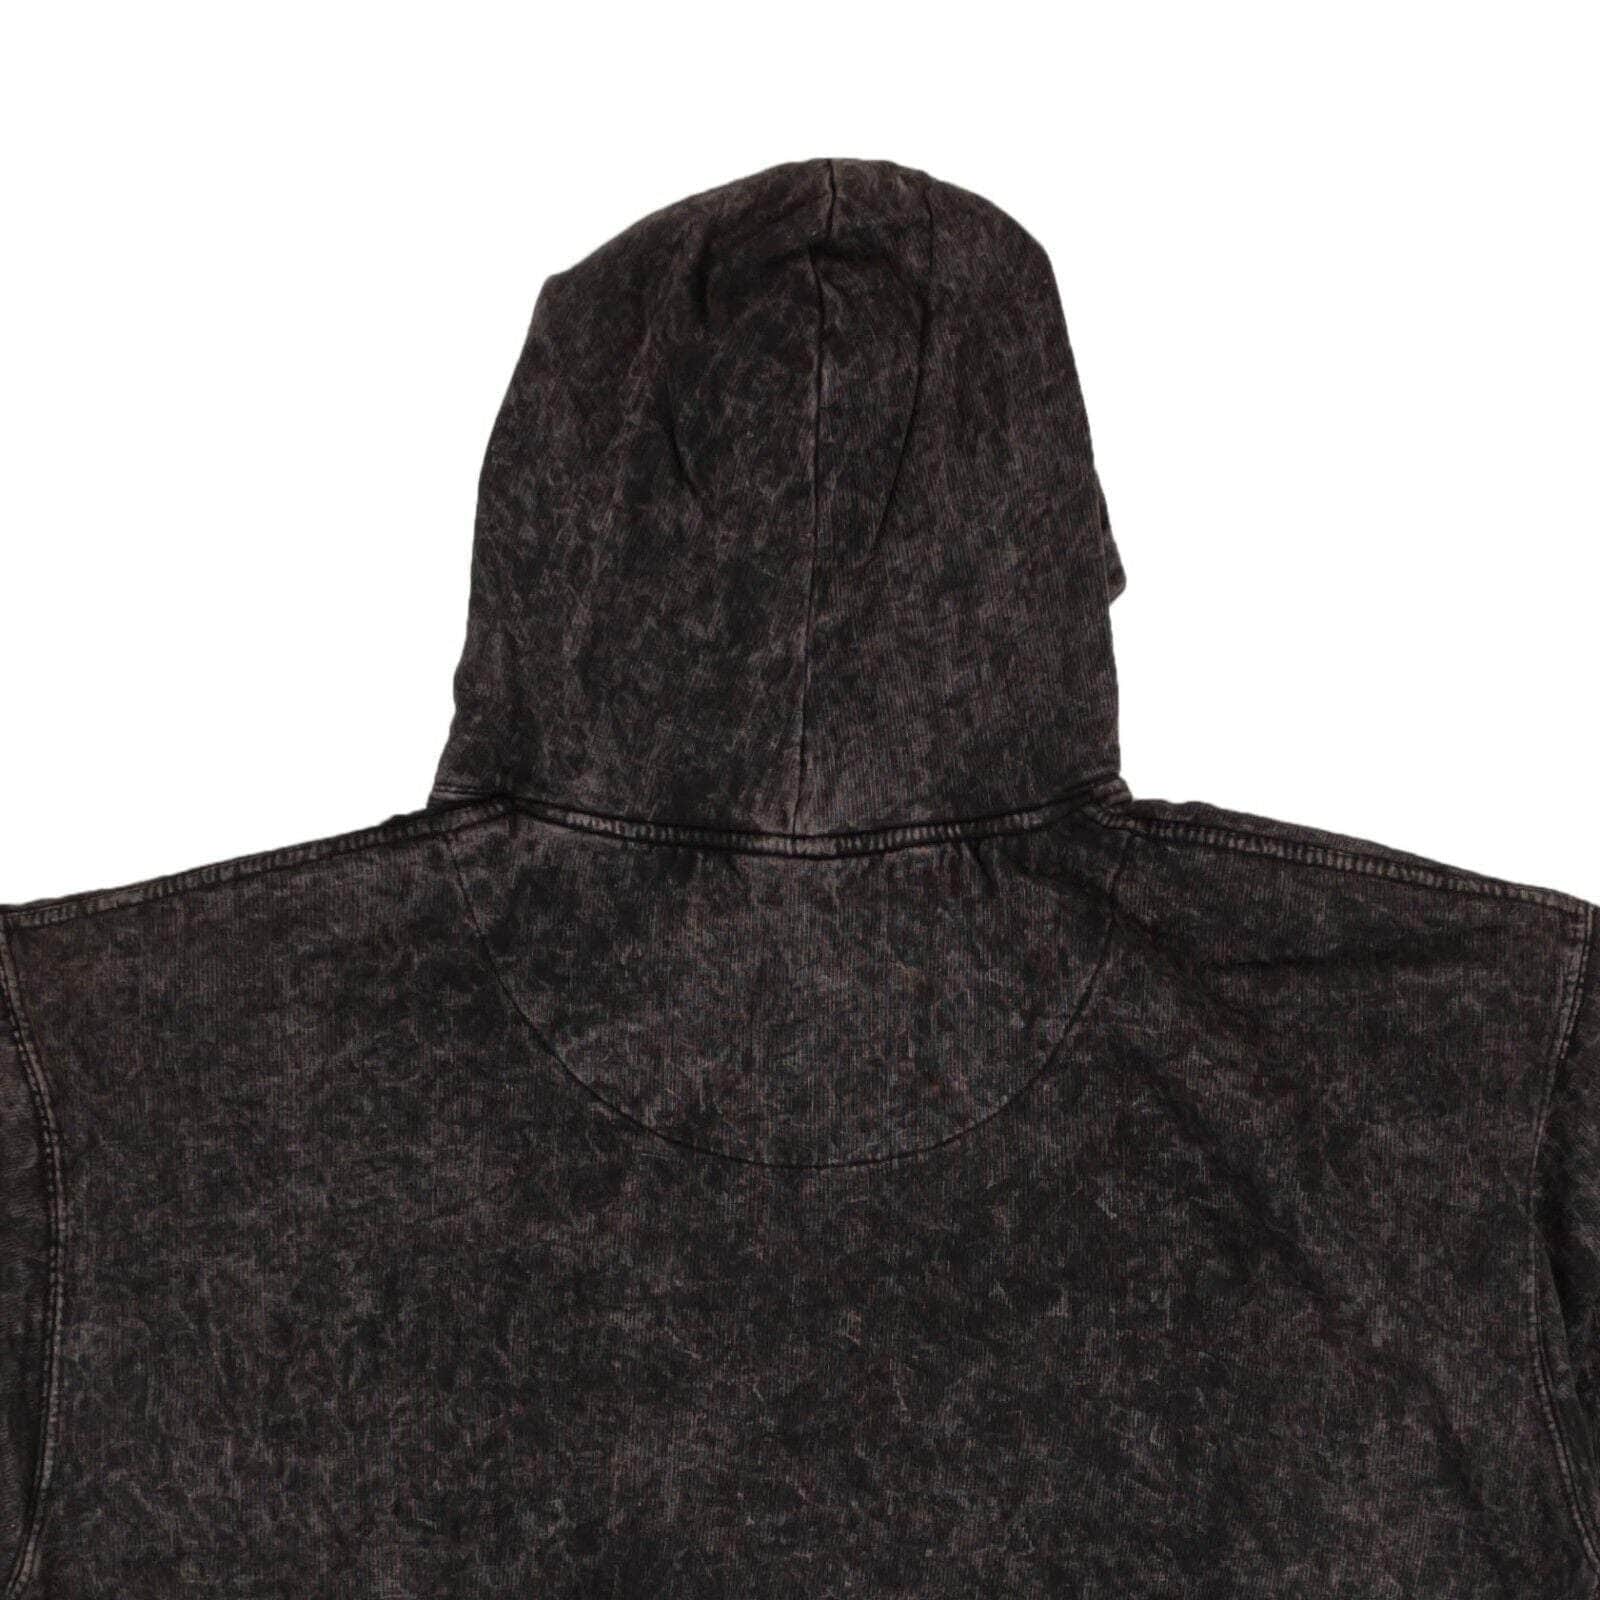 lakers hoodie mens black